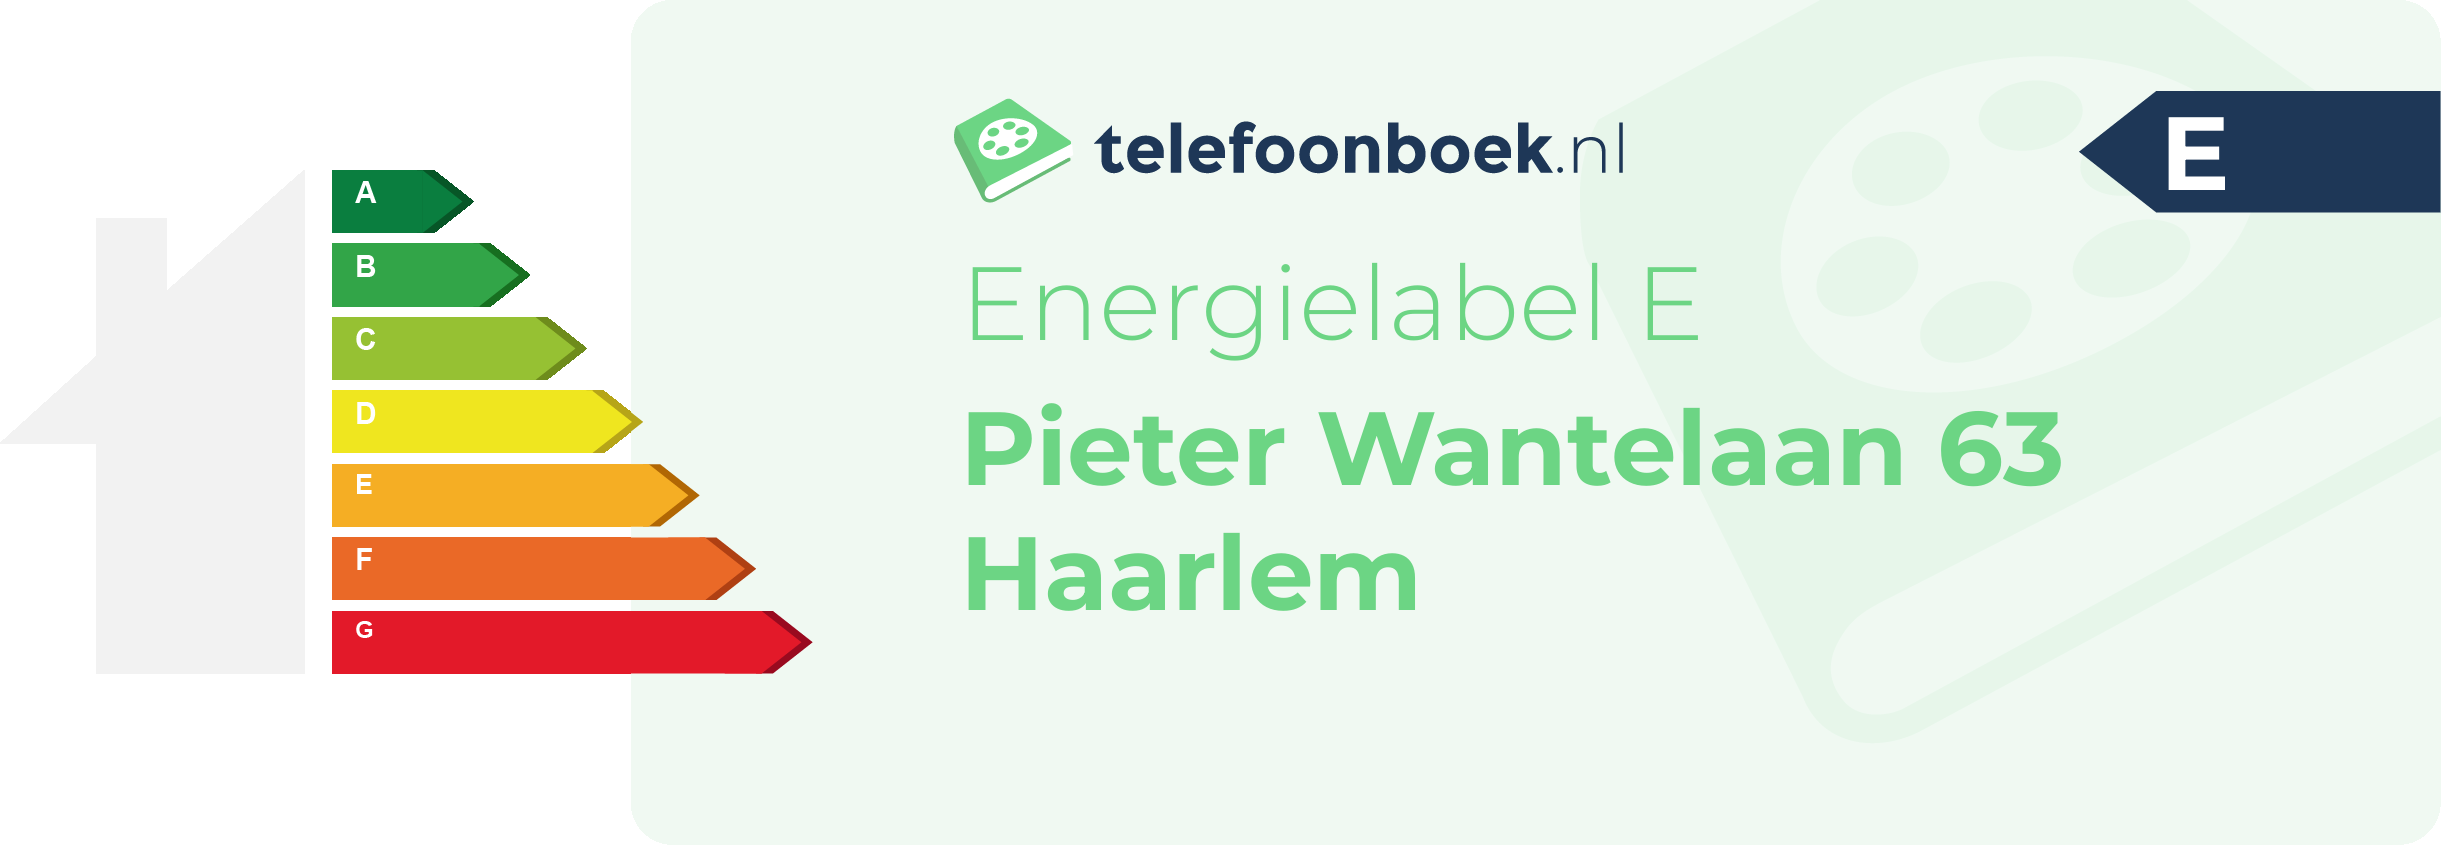 Energielabel Pieter Wantelaan 63 Haarlem